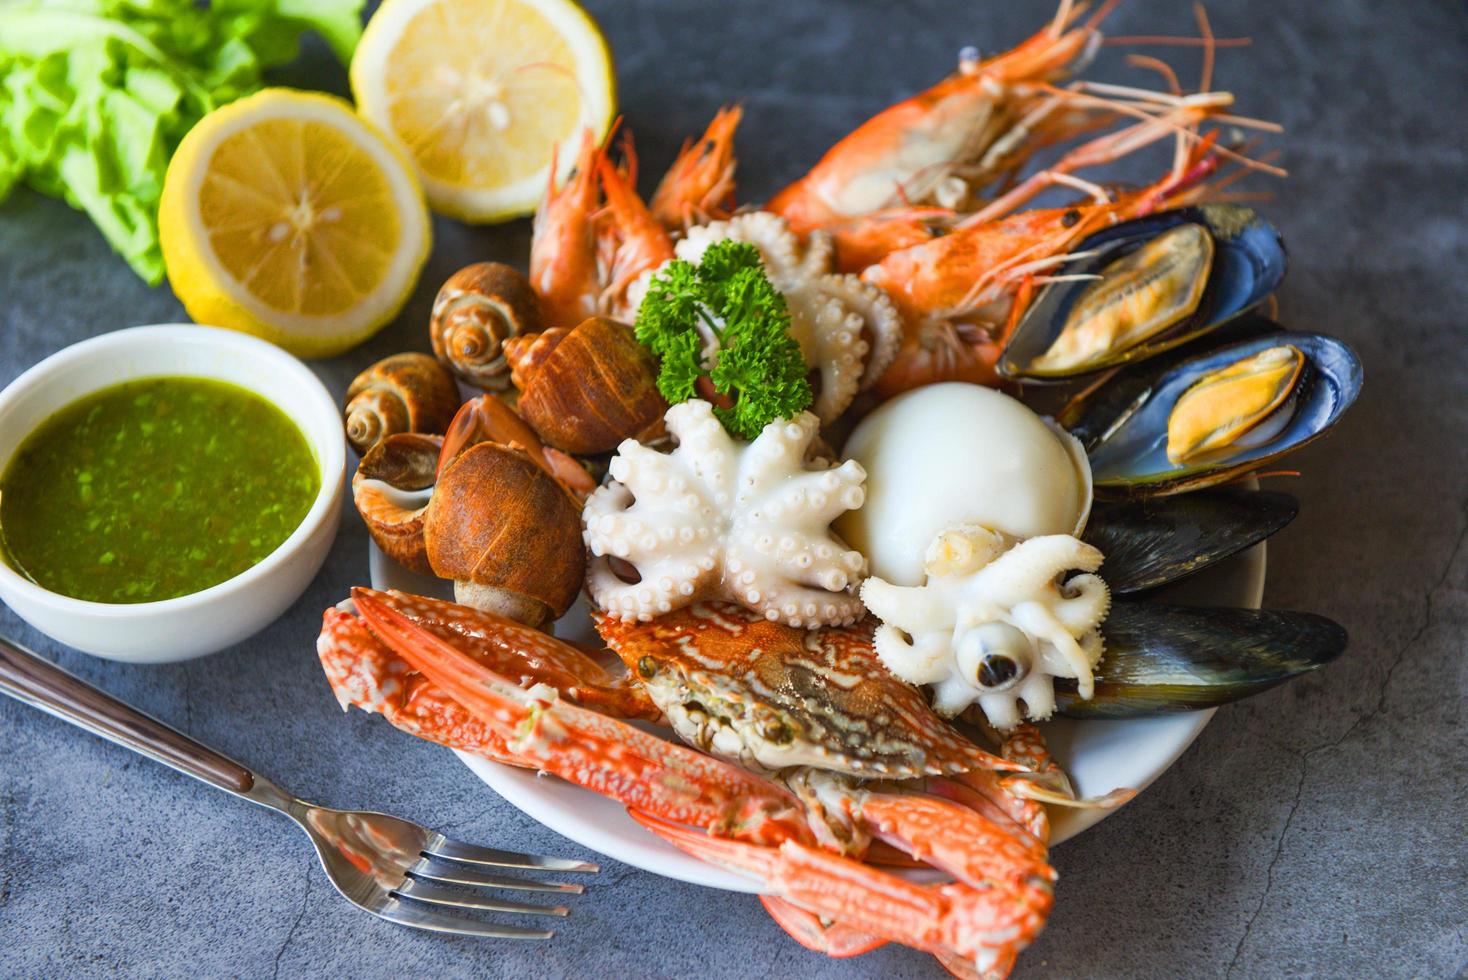 concept de buffet de fruits de mer servi à la vapeur - crevettes fraîches crevettes calamars moules tachetées de babylone crustacés crabe et sauce aux fruits de mer citron sur assiette fond noir en pierre photo